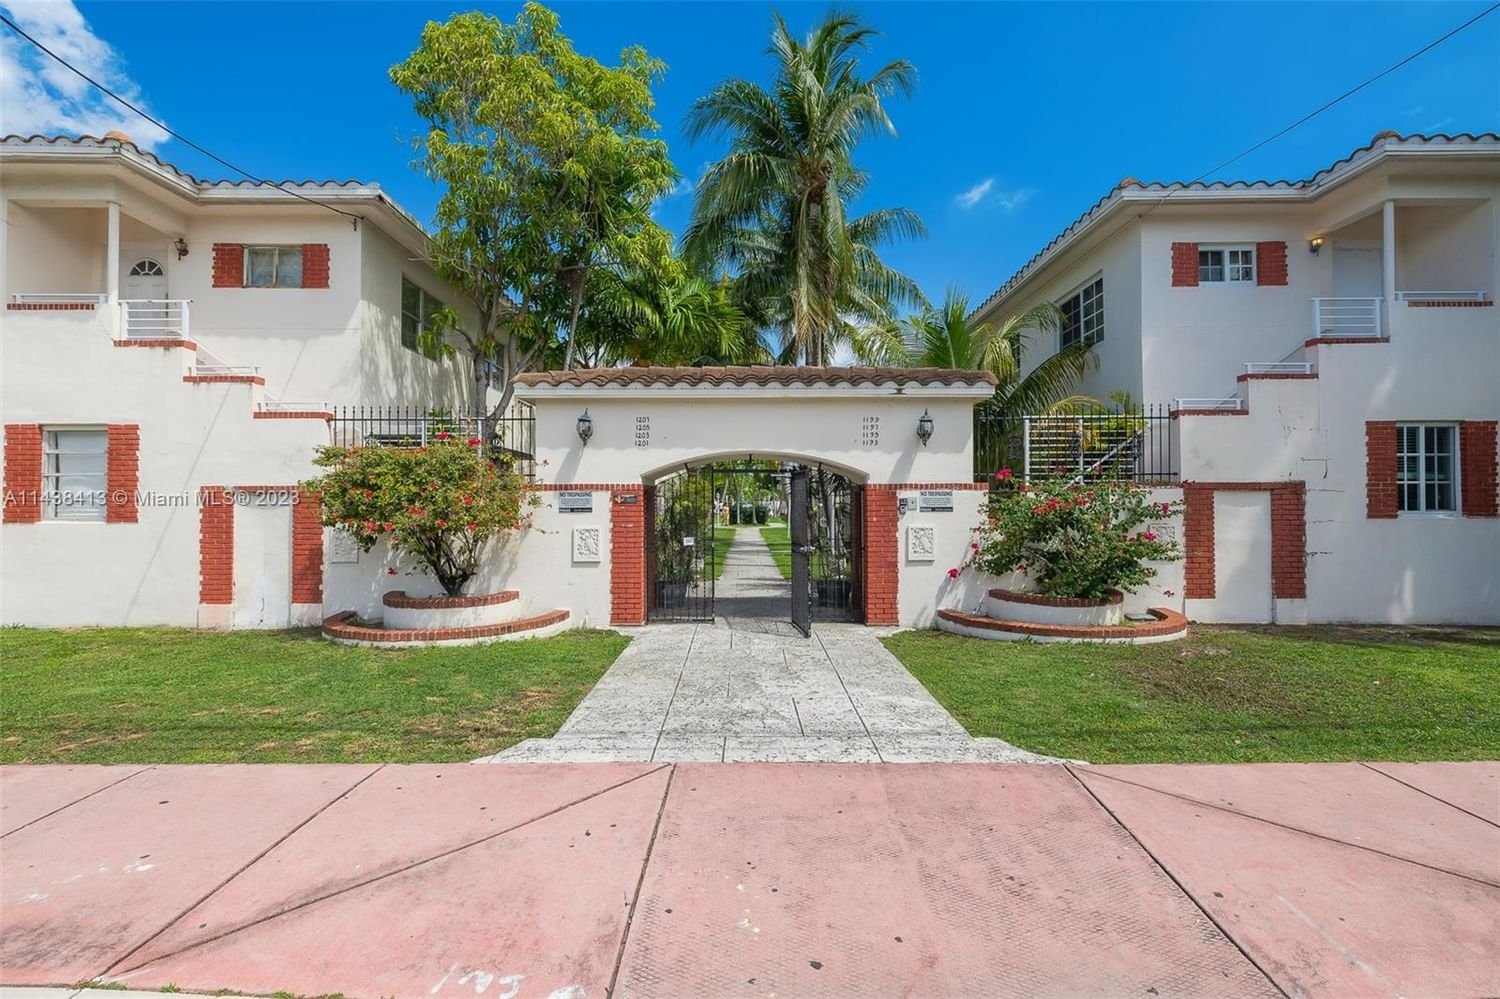 Real estate property located at 1201 Marseille Dr #19, Miami-Dade County, MARSEILLES CONDO, Miami Beach, FL